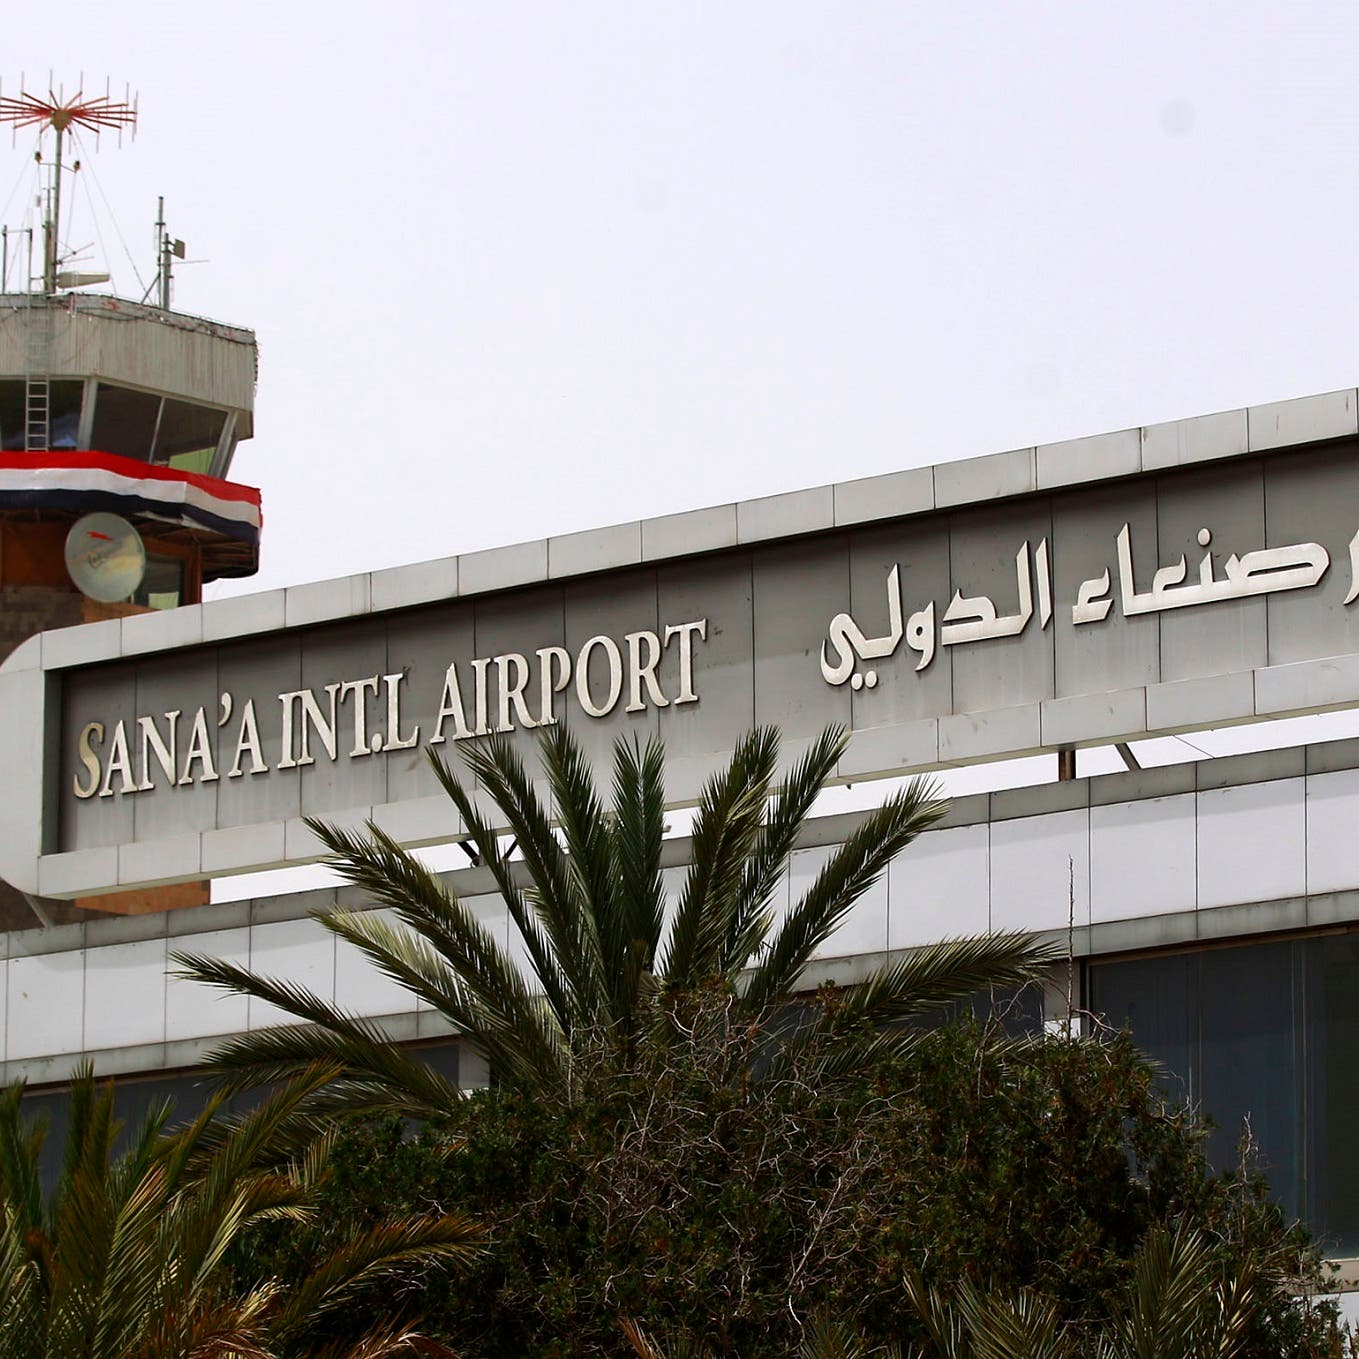 التحالف: رصد تحركات ونشاطات عدائية للحوثي في مطار صنعاء